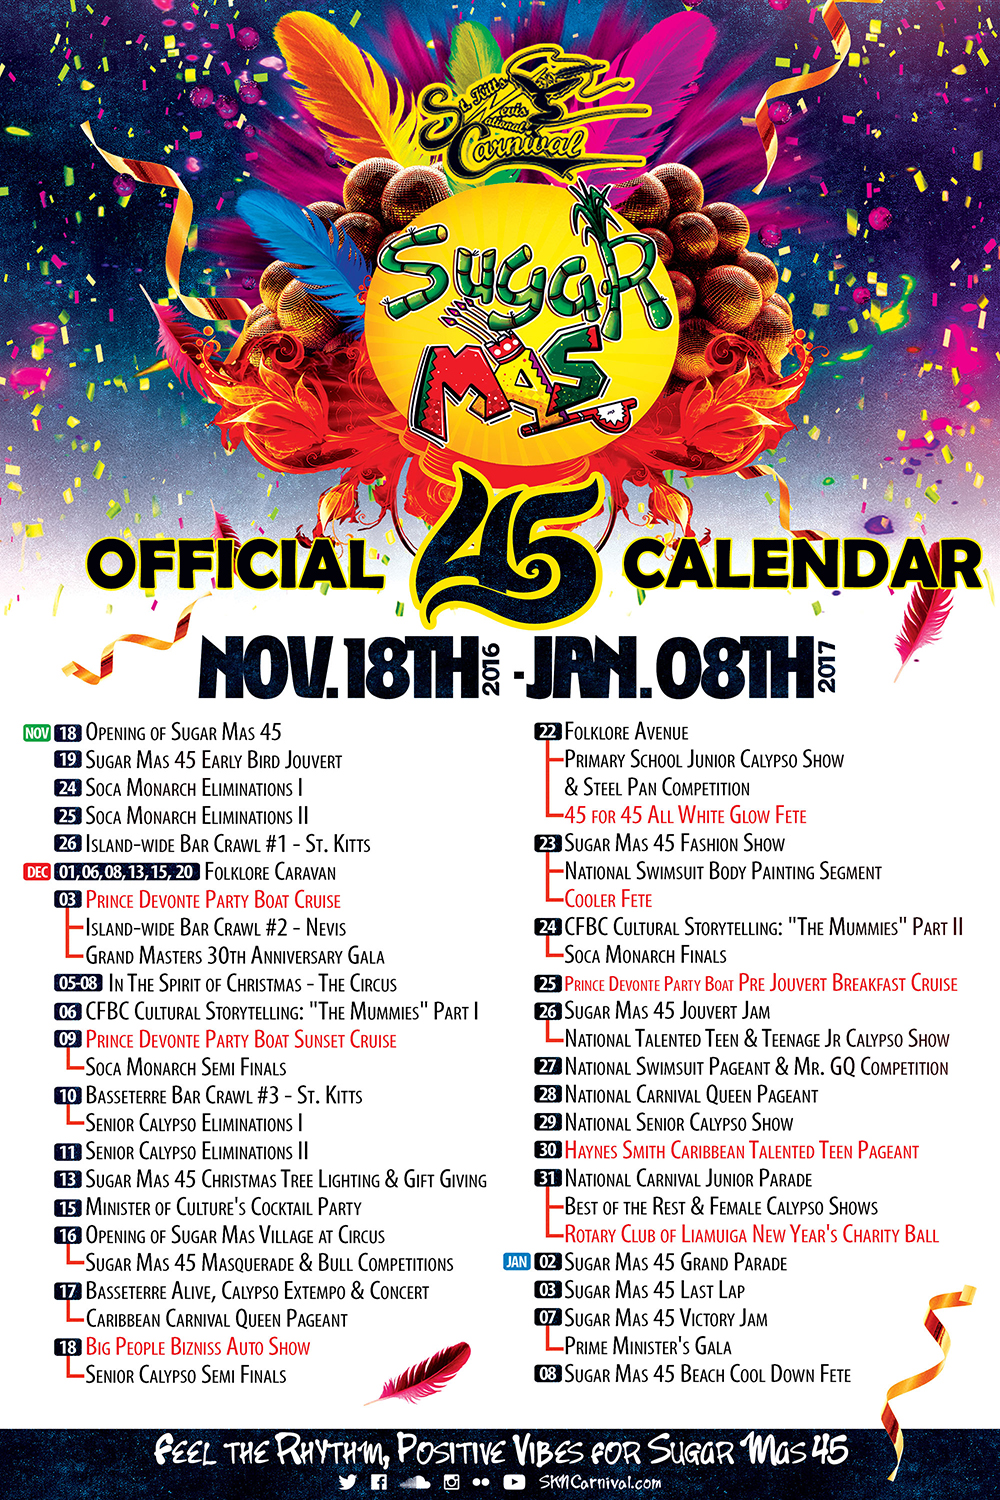 Freedom FM 106.5 Sugar Mas 45 Calendar of Events